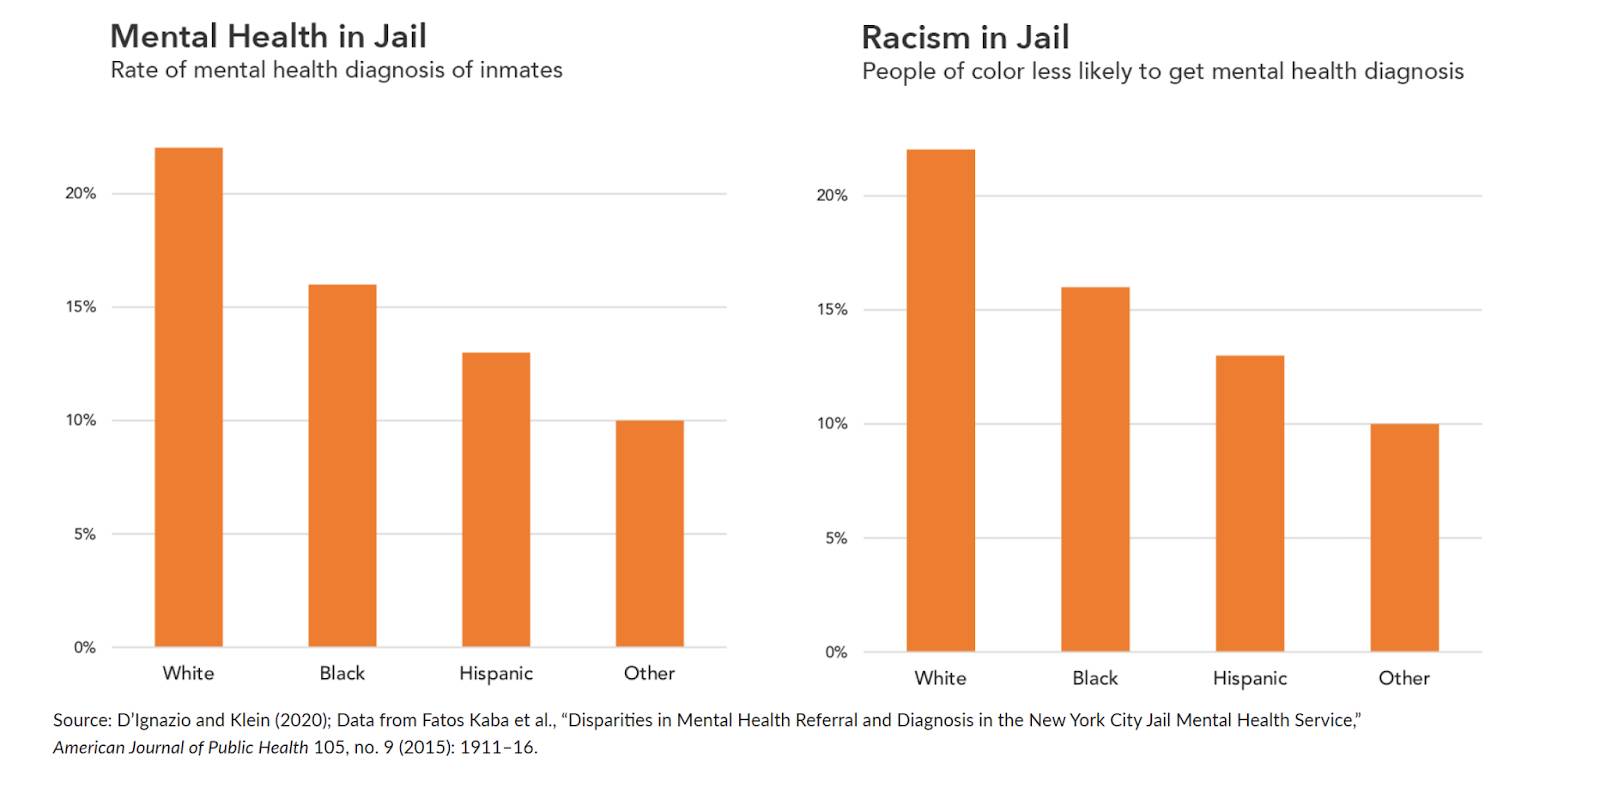 按白人、黑人、西班牙裔和其他四个类别降序排列的监狱中精神健康和种族主义百分比的图表。